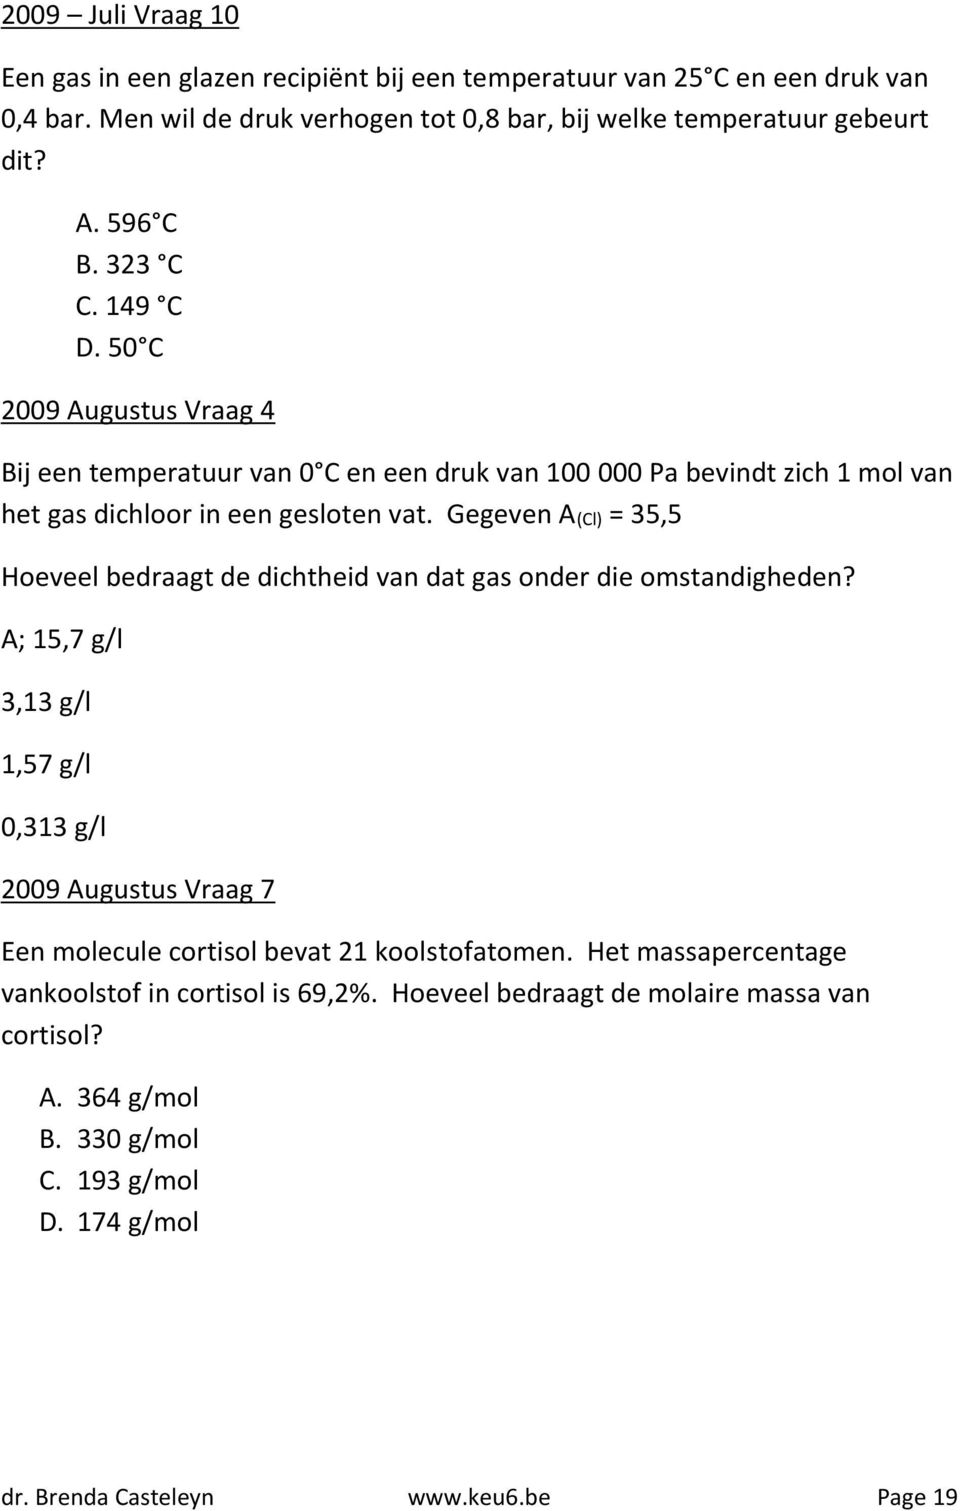 Gegeven A(Cl) = 35,5 Hoeveel bedraagt de dichtheid van dat gas onder die omstandigheden?